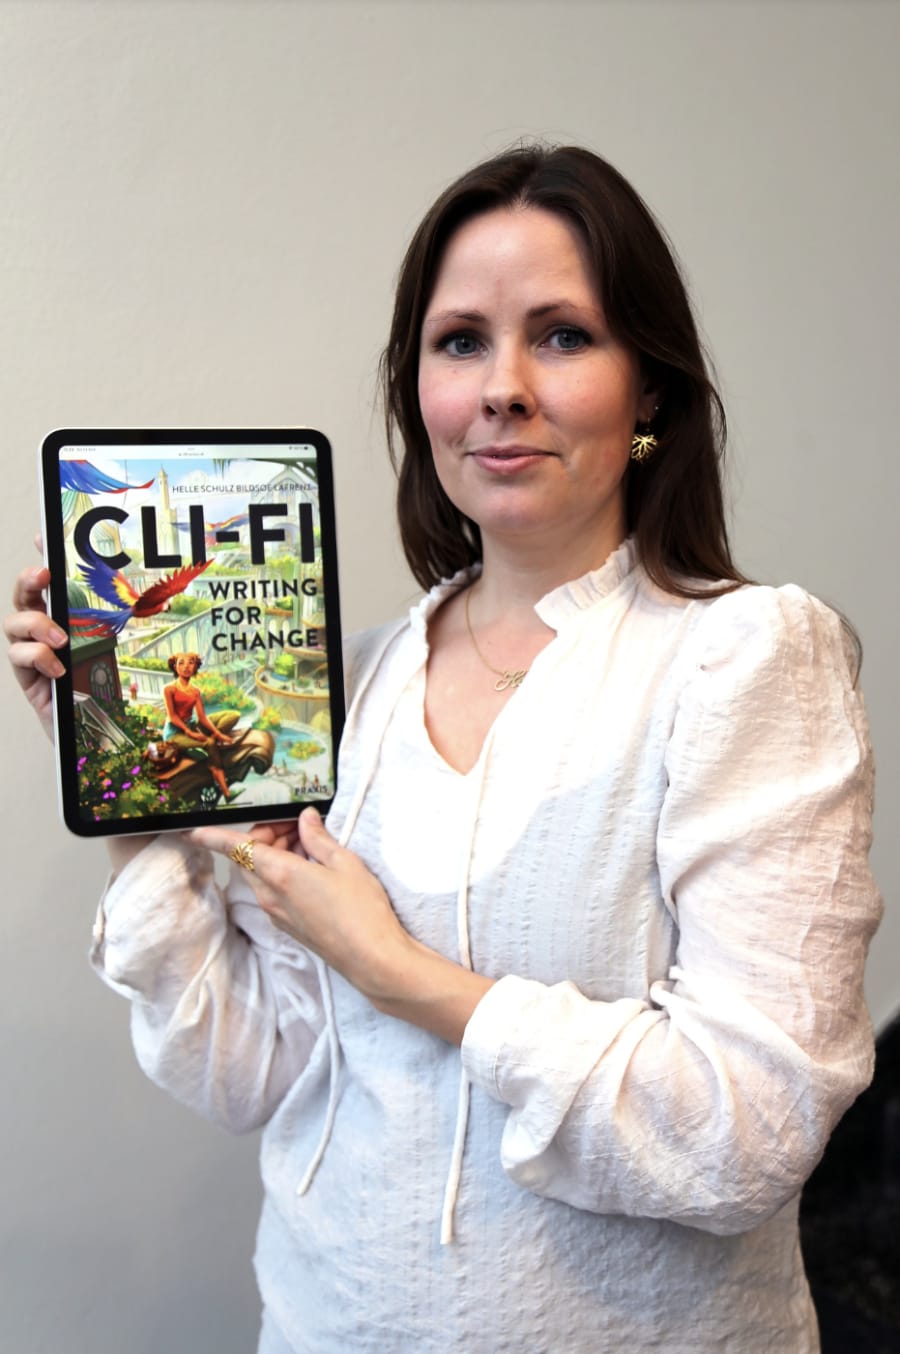 Den aktivistiske og positive skolebog “Cli-Fi - Writing for Change" er skrevet af Helle Schulz Bildsøe Lafrenz.